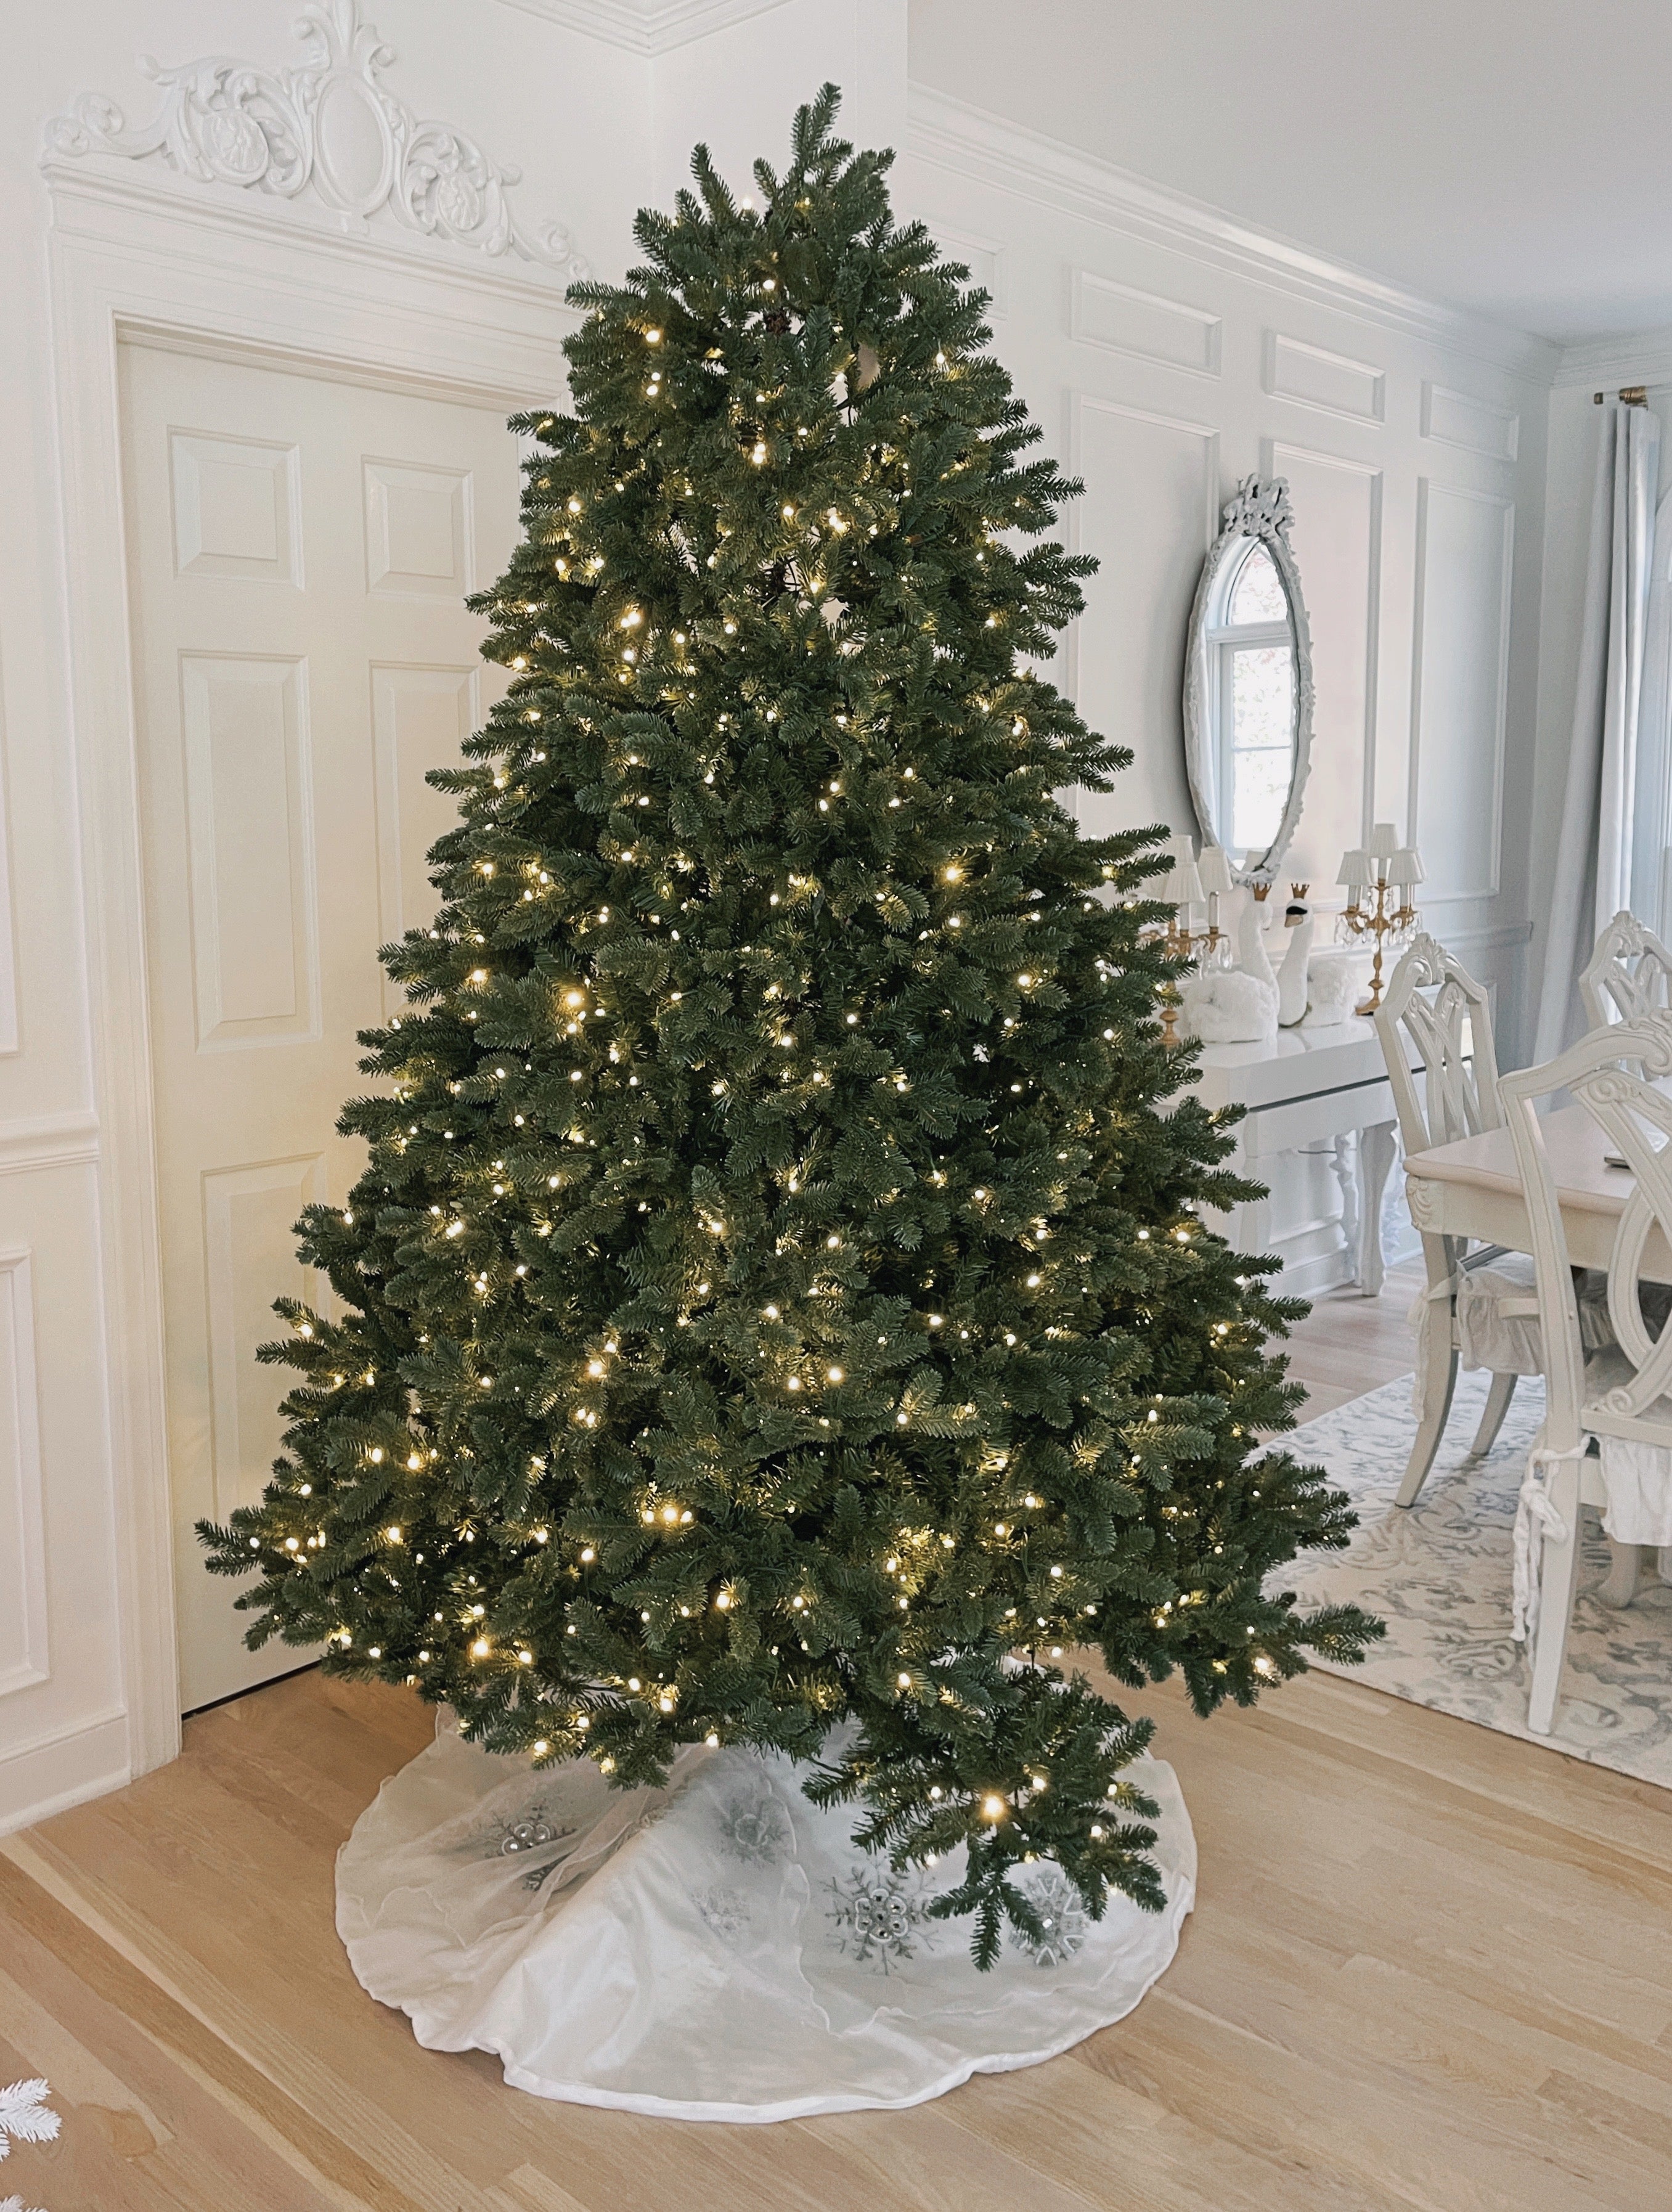 King of Christmas 7.5' Aspen Fir Quick-Shape Tree Unlit